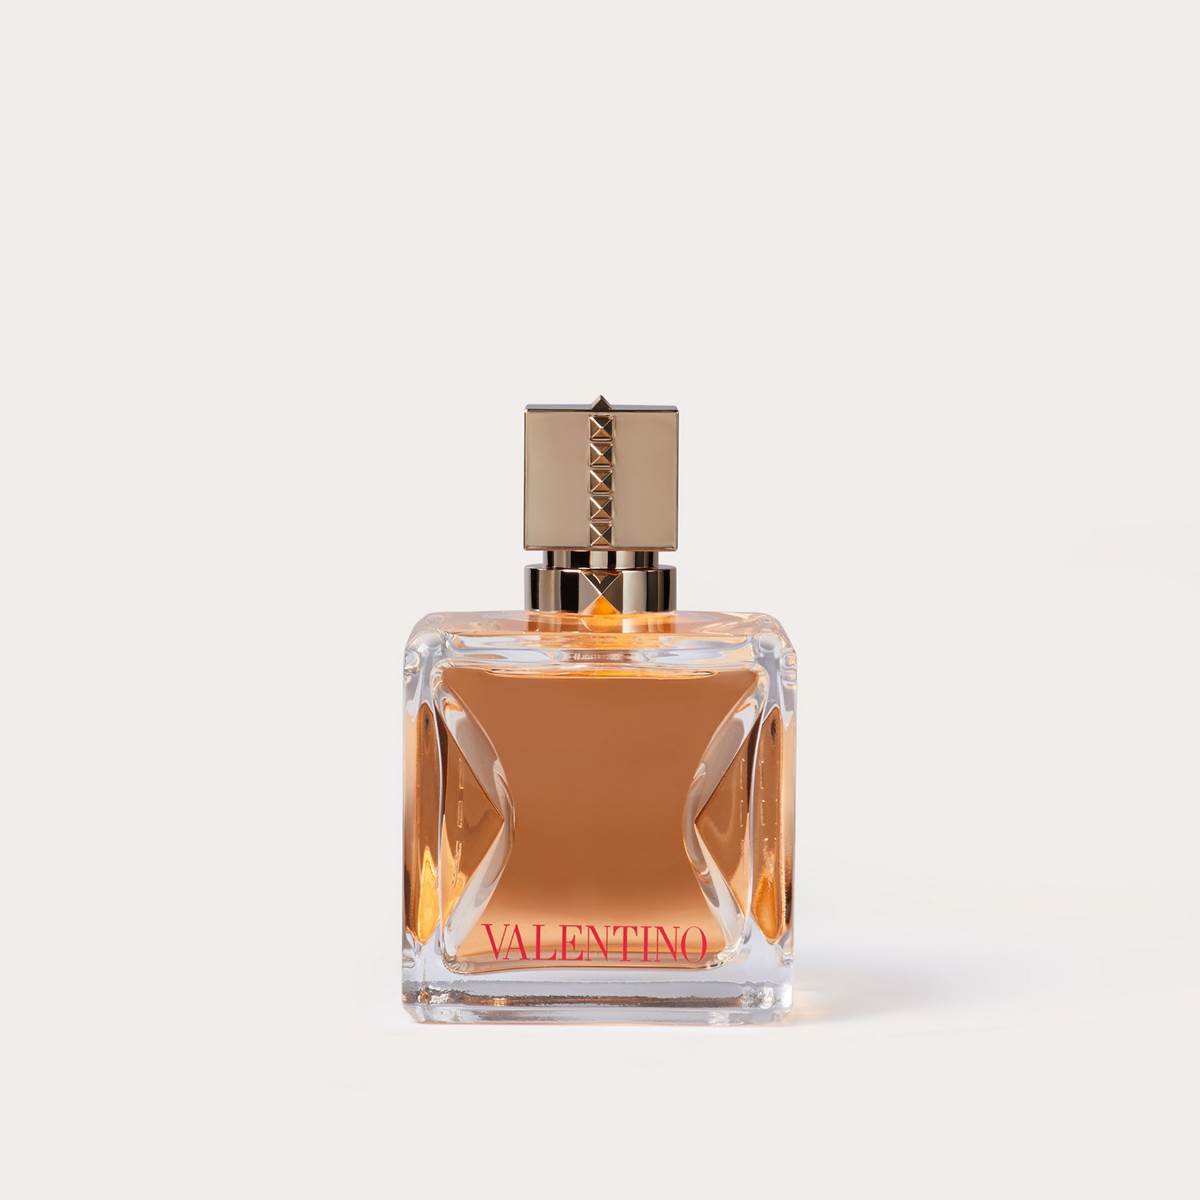 Voce Viva Valentino parfem je senzualna i ženstvena kompozicija mirisa odlična za zimske dane.